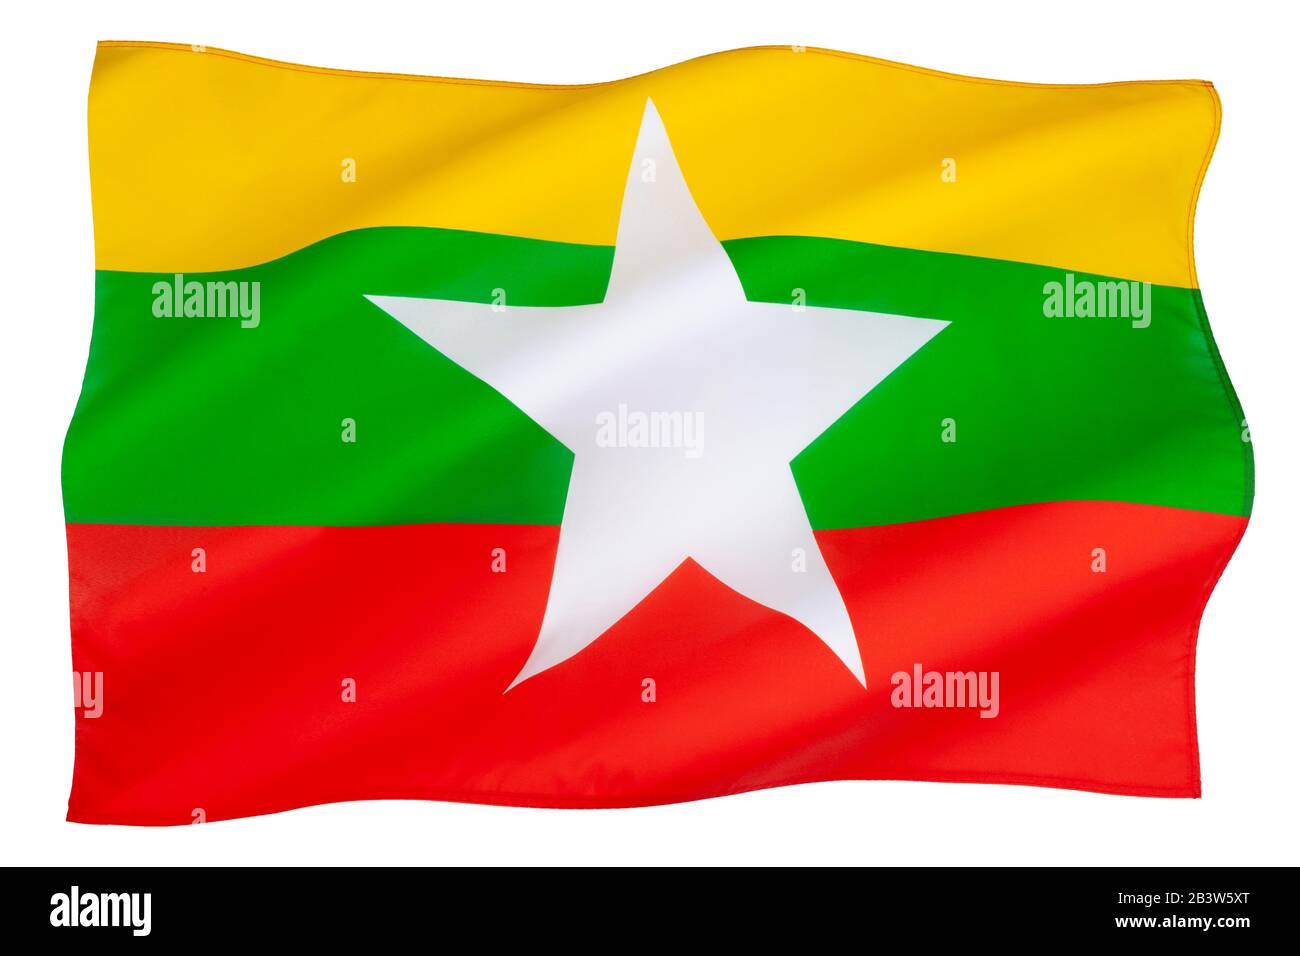 Die aktuelle Flagge Myanmars (auch Burma genannt) wurde am 21. Oktober 2010 als Ersatz für die seit 1974 verwendete frühere Flagge verabschiedet. Stockfoto